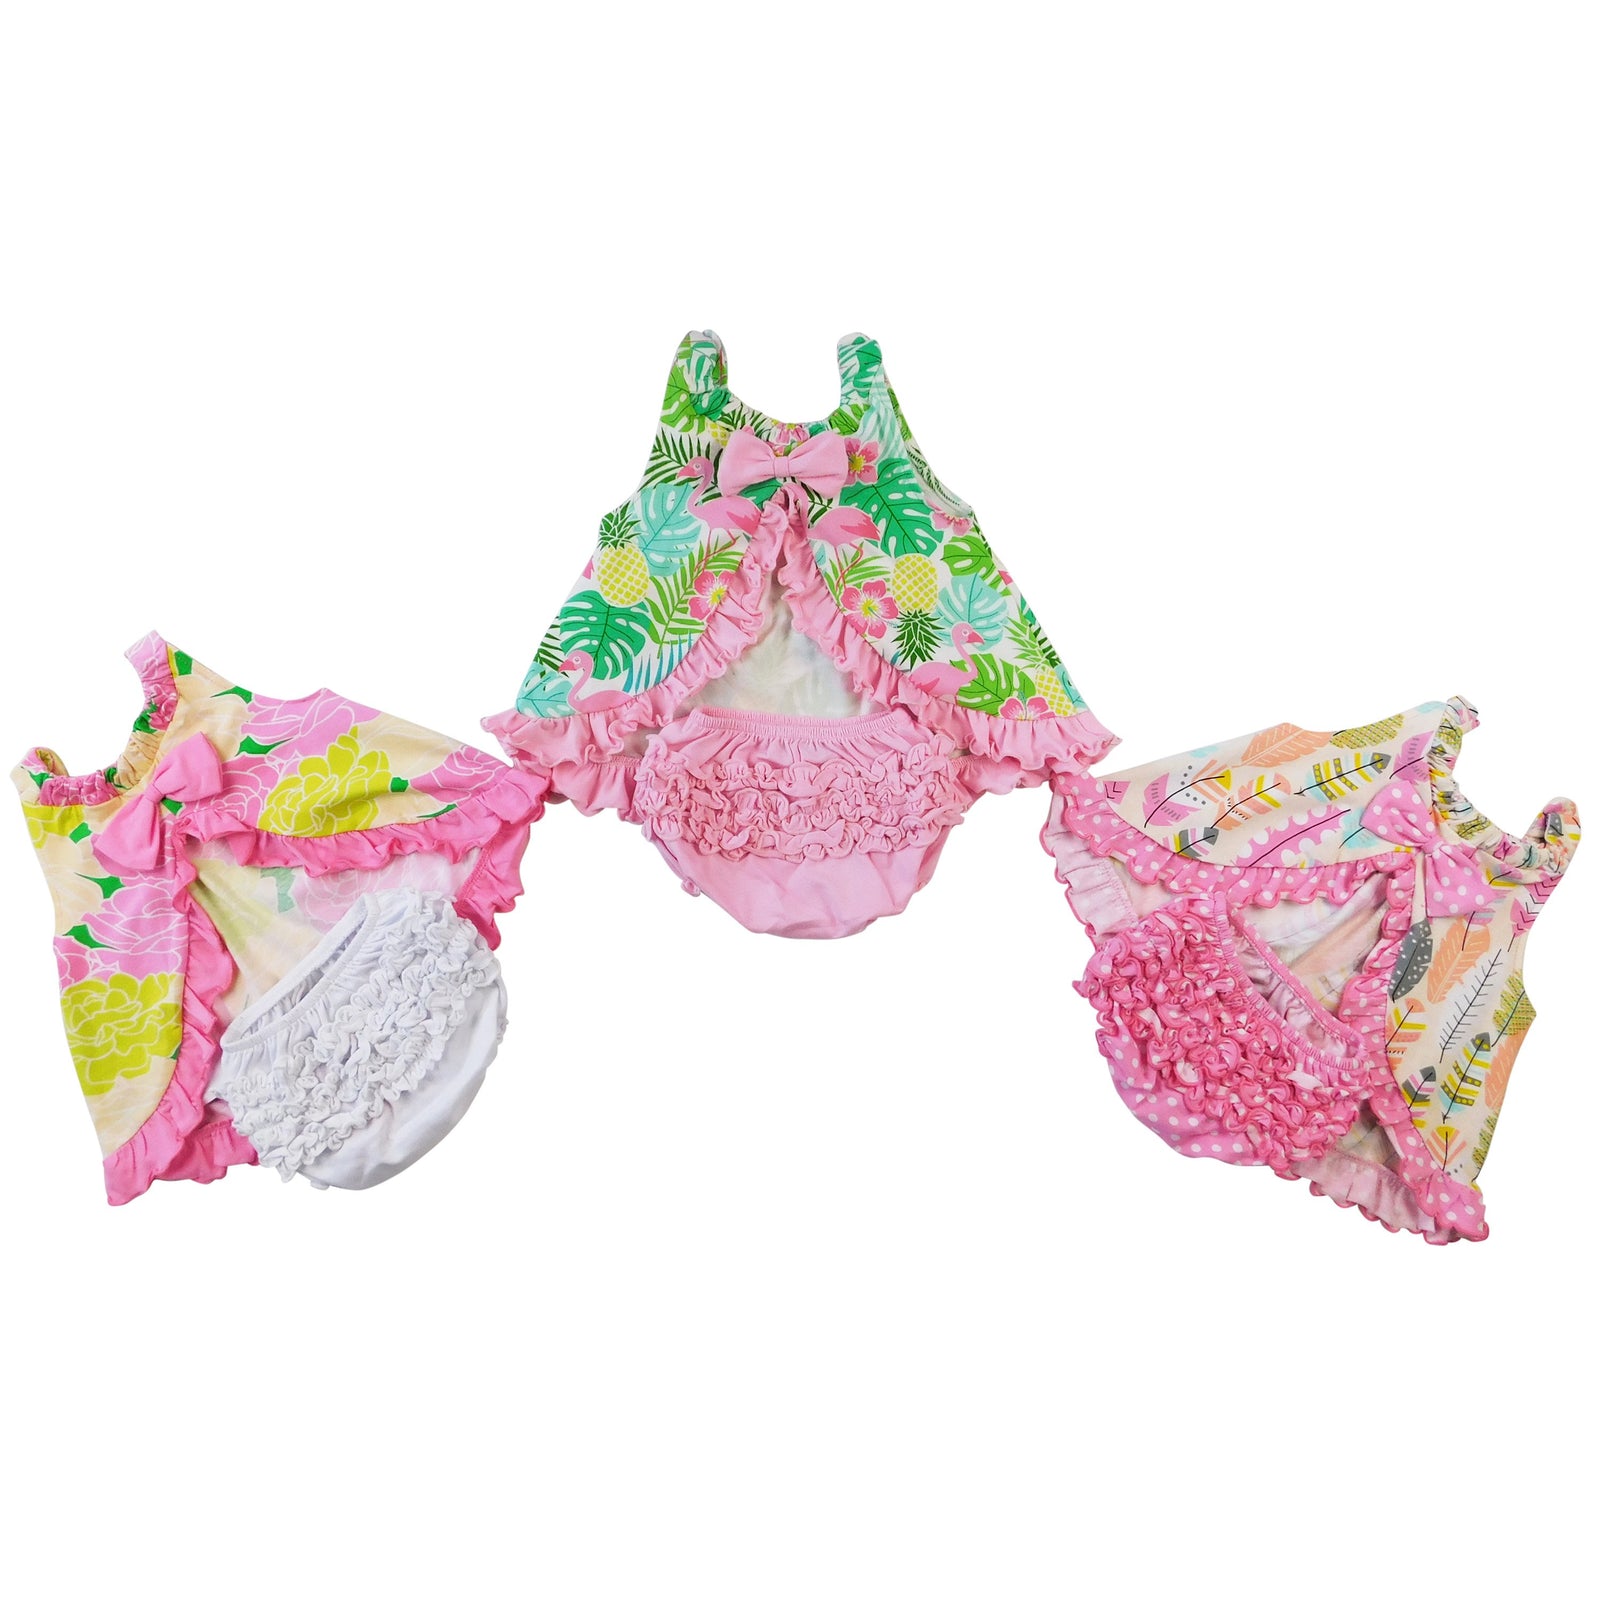 Light Pink Knit Ruffled Butt Bloomer Baby & Toddler Girls Diaper Cover by AnnLoren